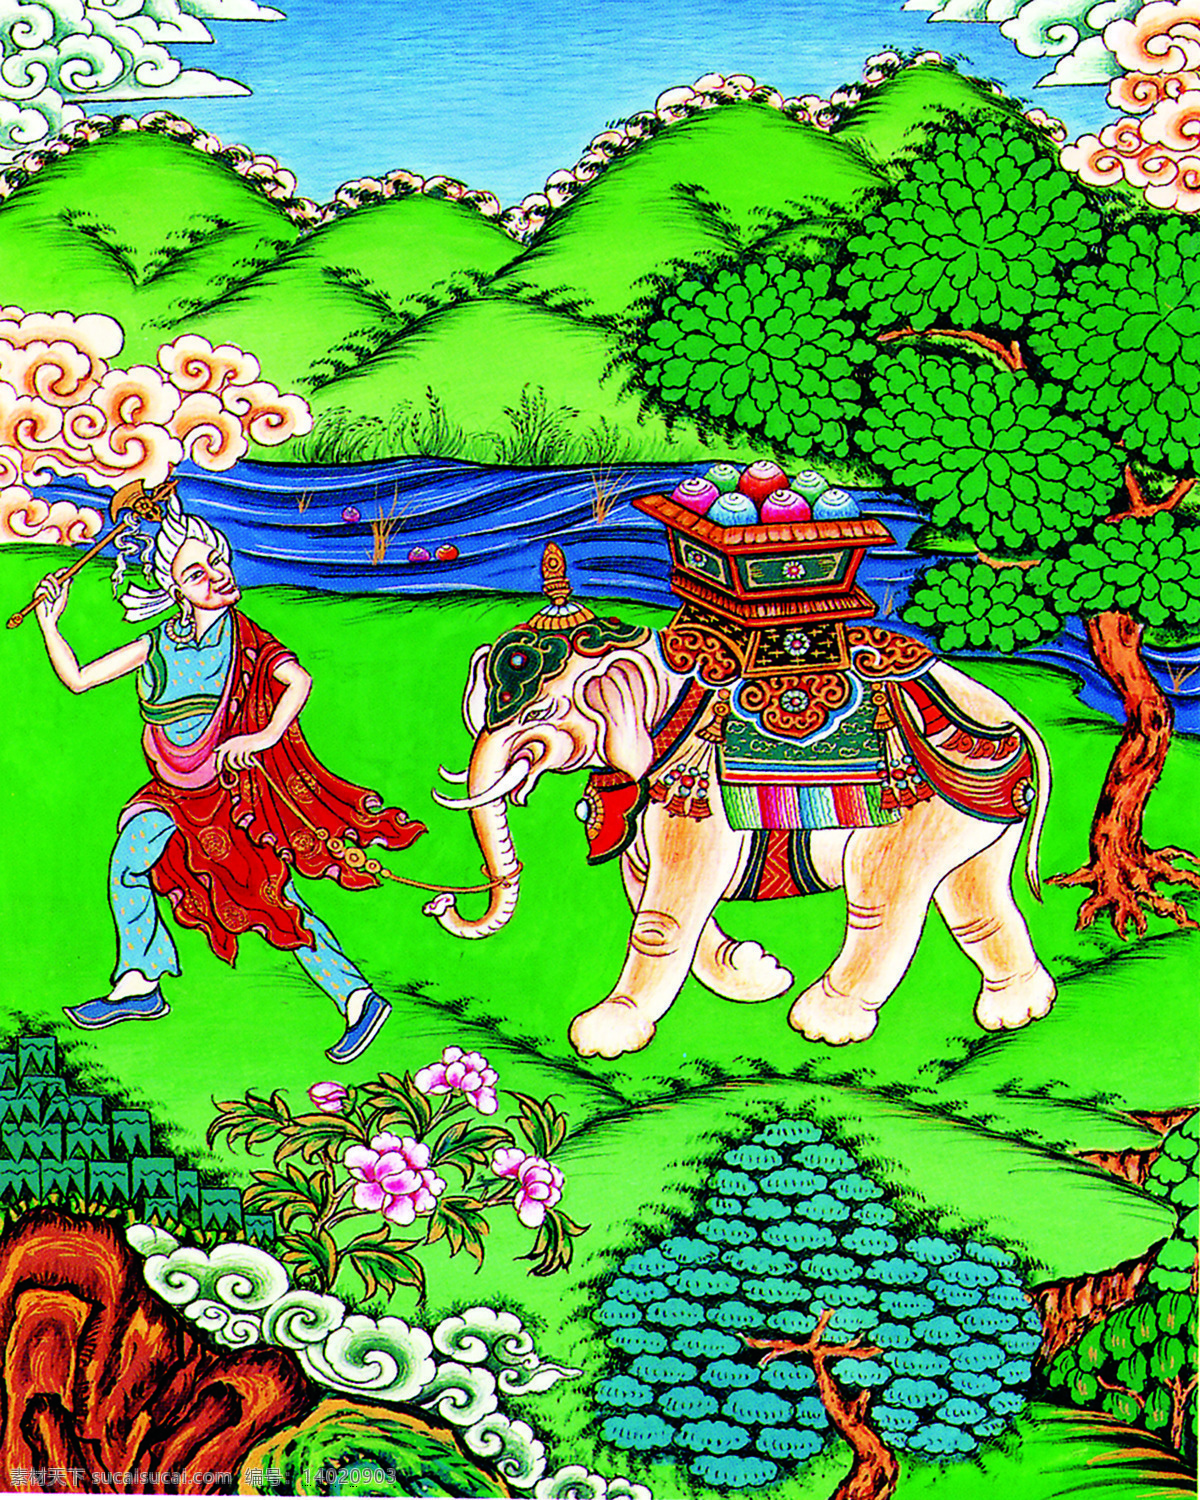 藏族吉祥图 藏族 唐卡 吉祥图 大象 图腾 绘画作品 绘画书法 文化艺术